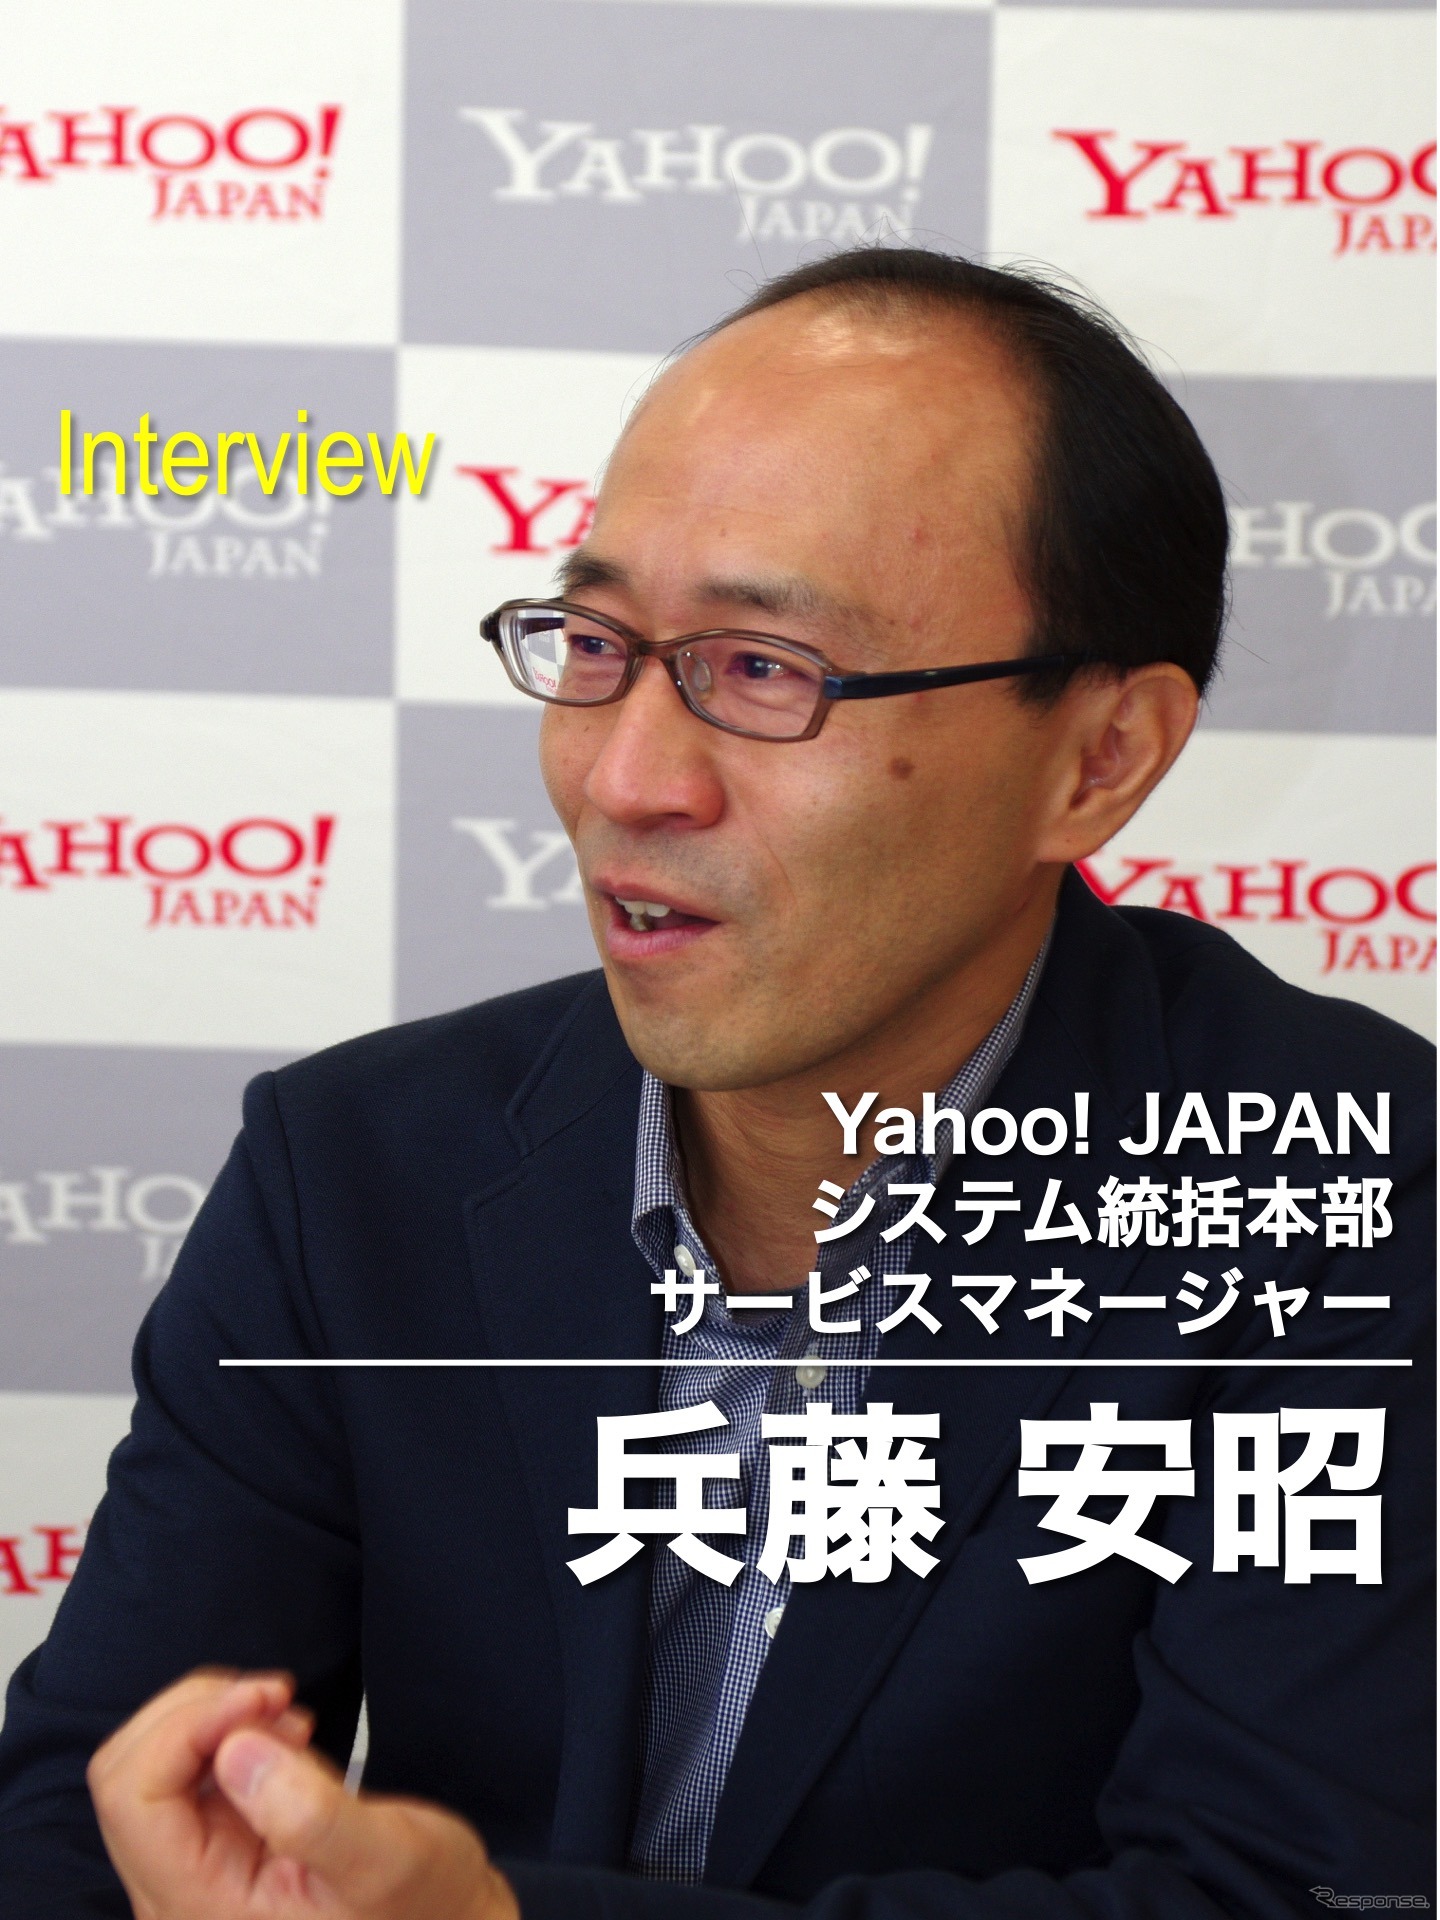 Yahoo! Japanシステム統括本部 サービスマネージャー 兵藤 安昭